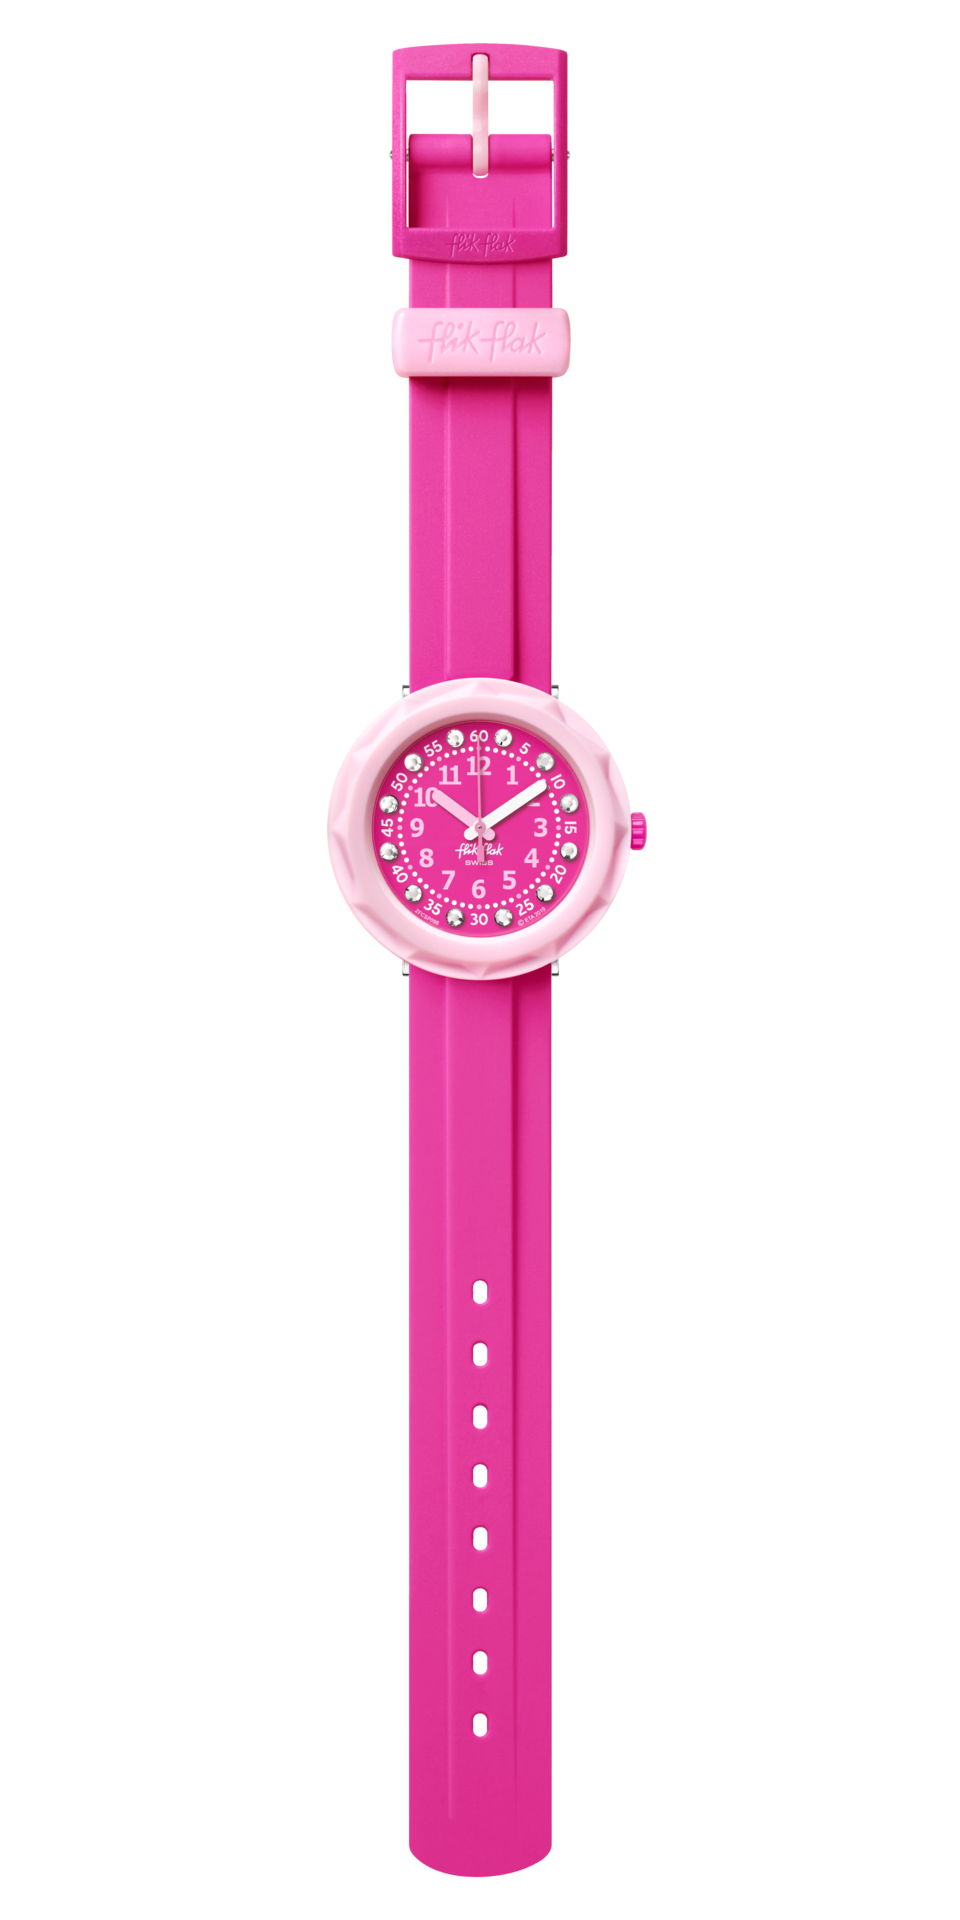 Swatch Flik Flak - Pink on My Mind